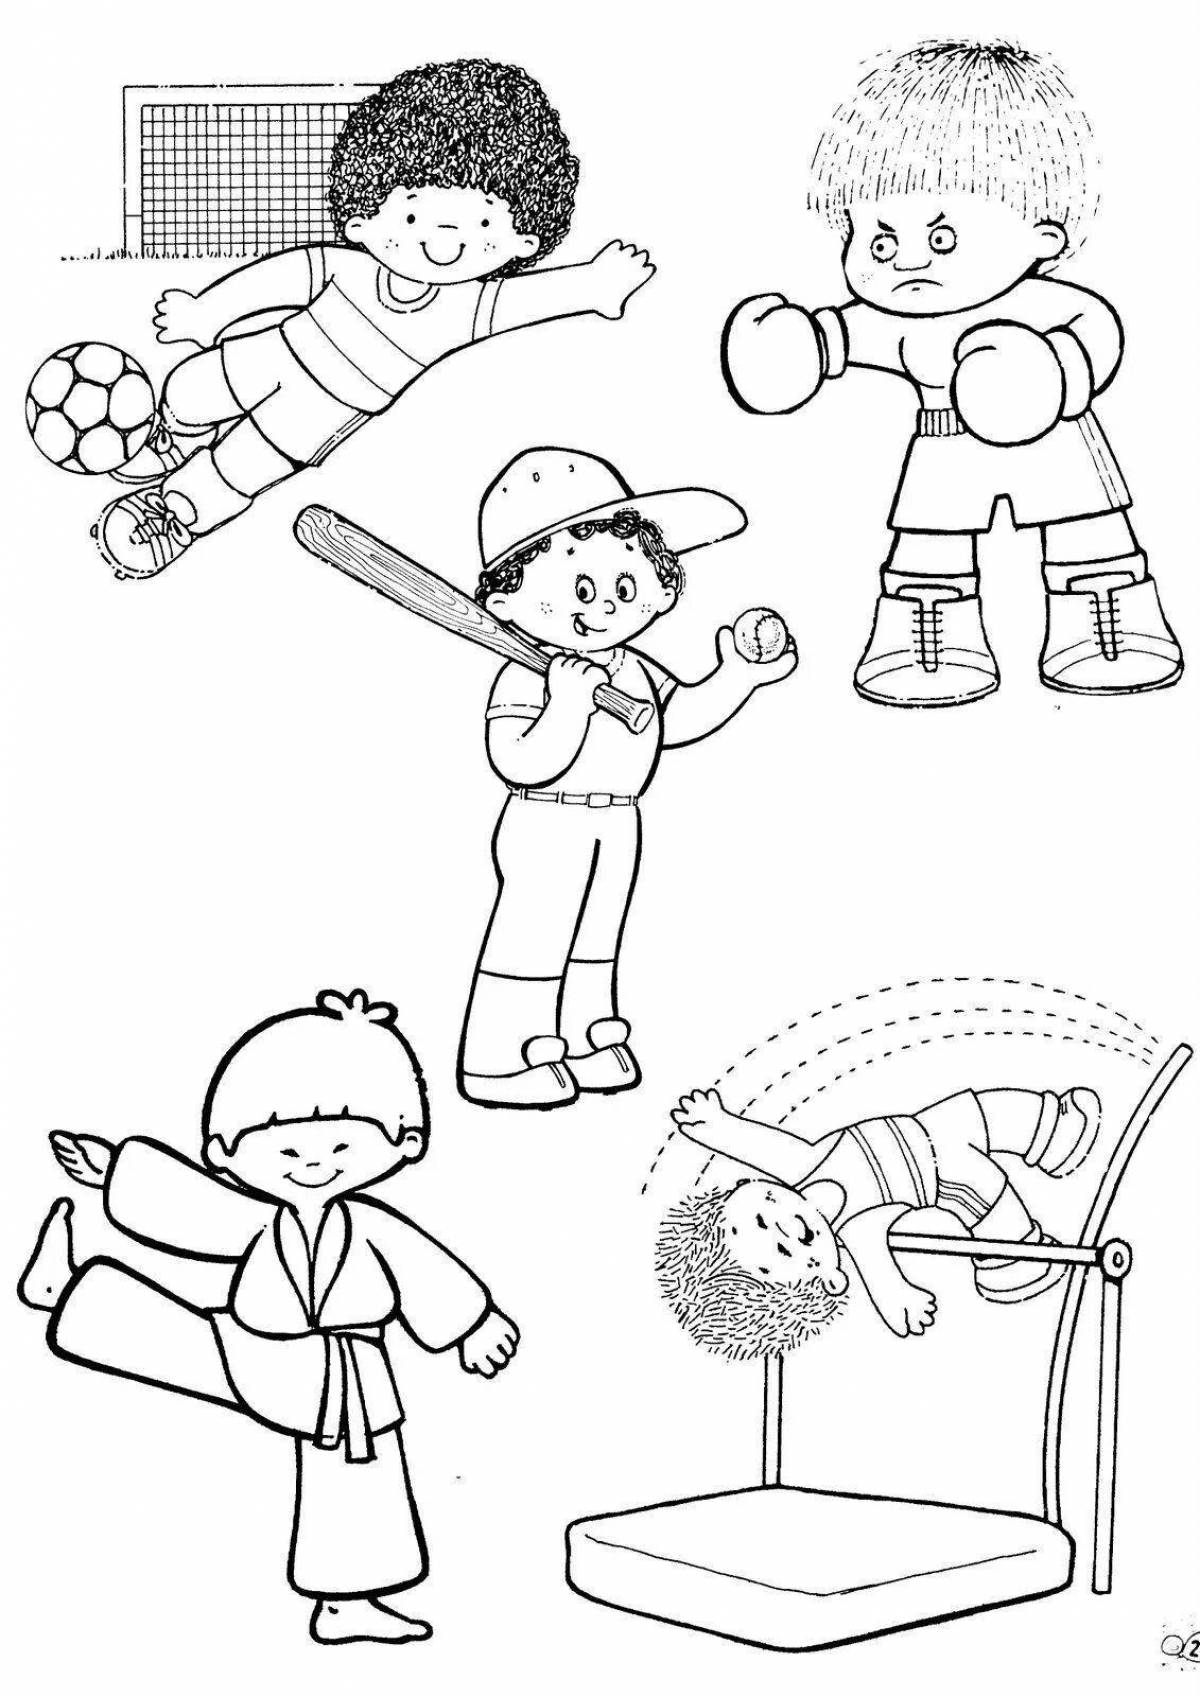 Развлекательная спортивная раскраска для детей 6-7 лет